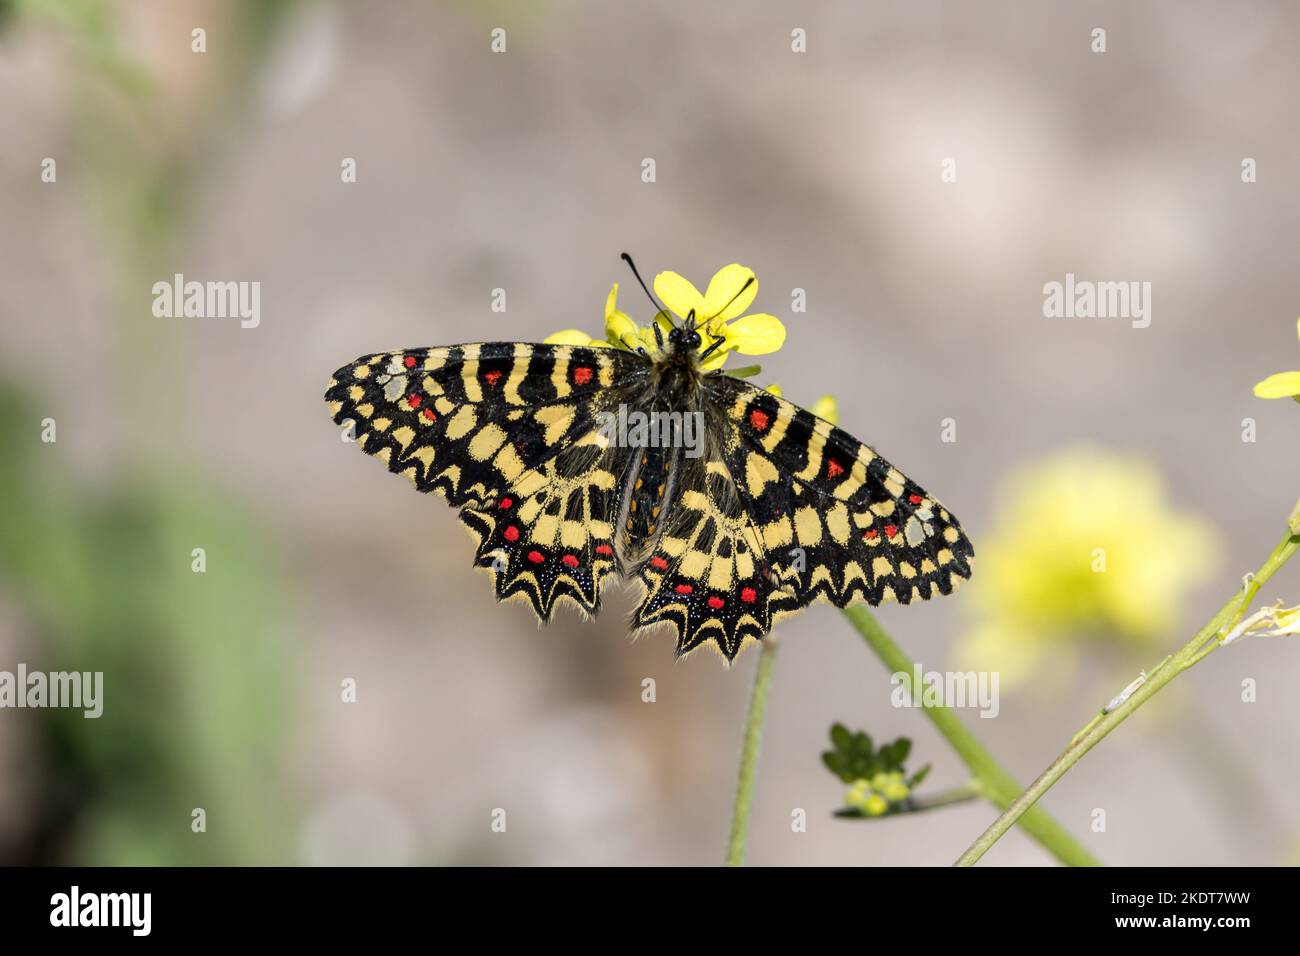 Festoon spagnolo - Zerynthia rumina (Linnaeus, 1758) - farfalla a Carissa Aurelia, Andalusia, Spagna. Aprile 2021 Foto Stock